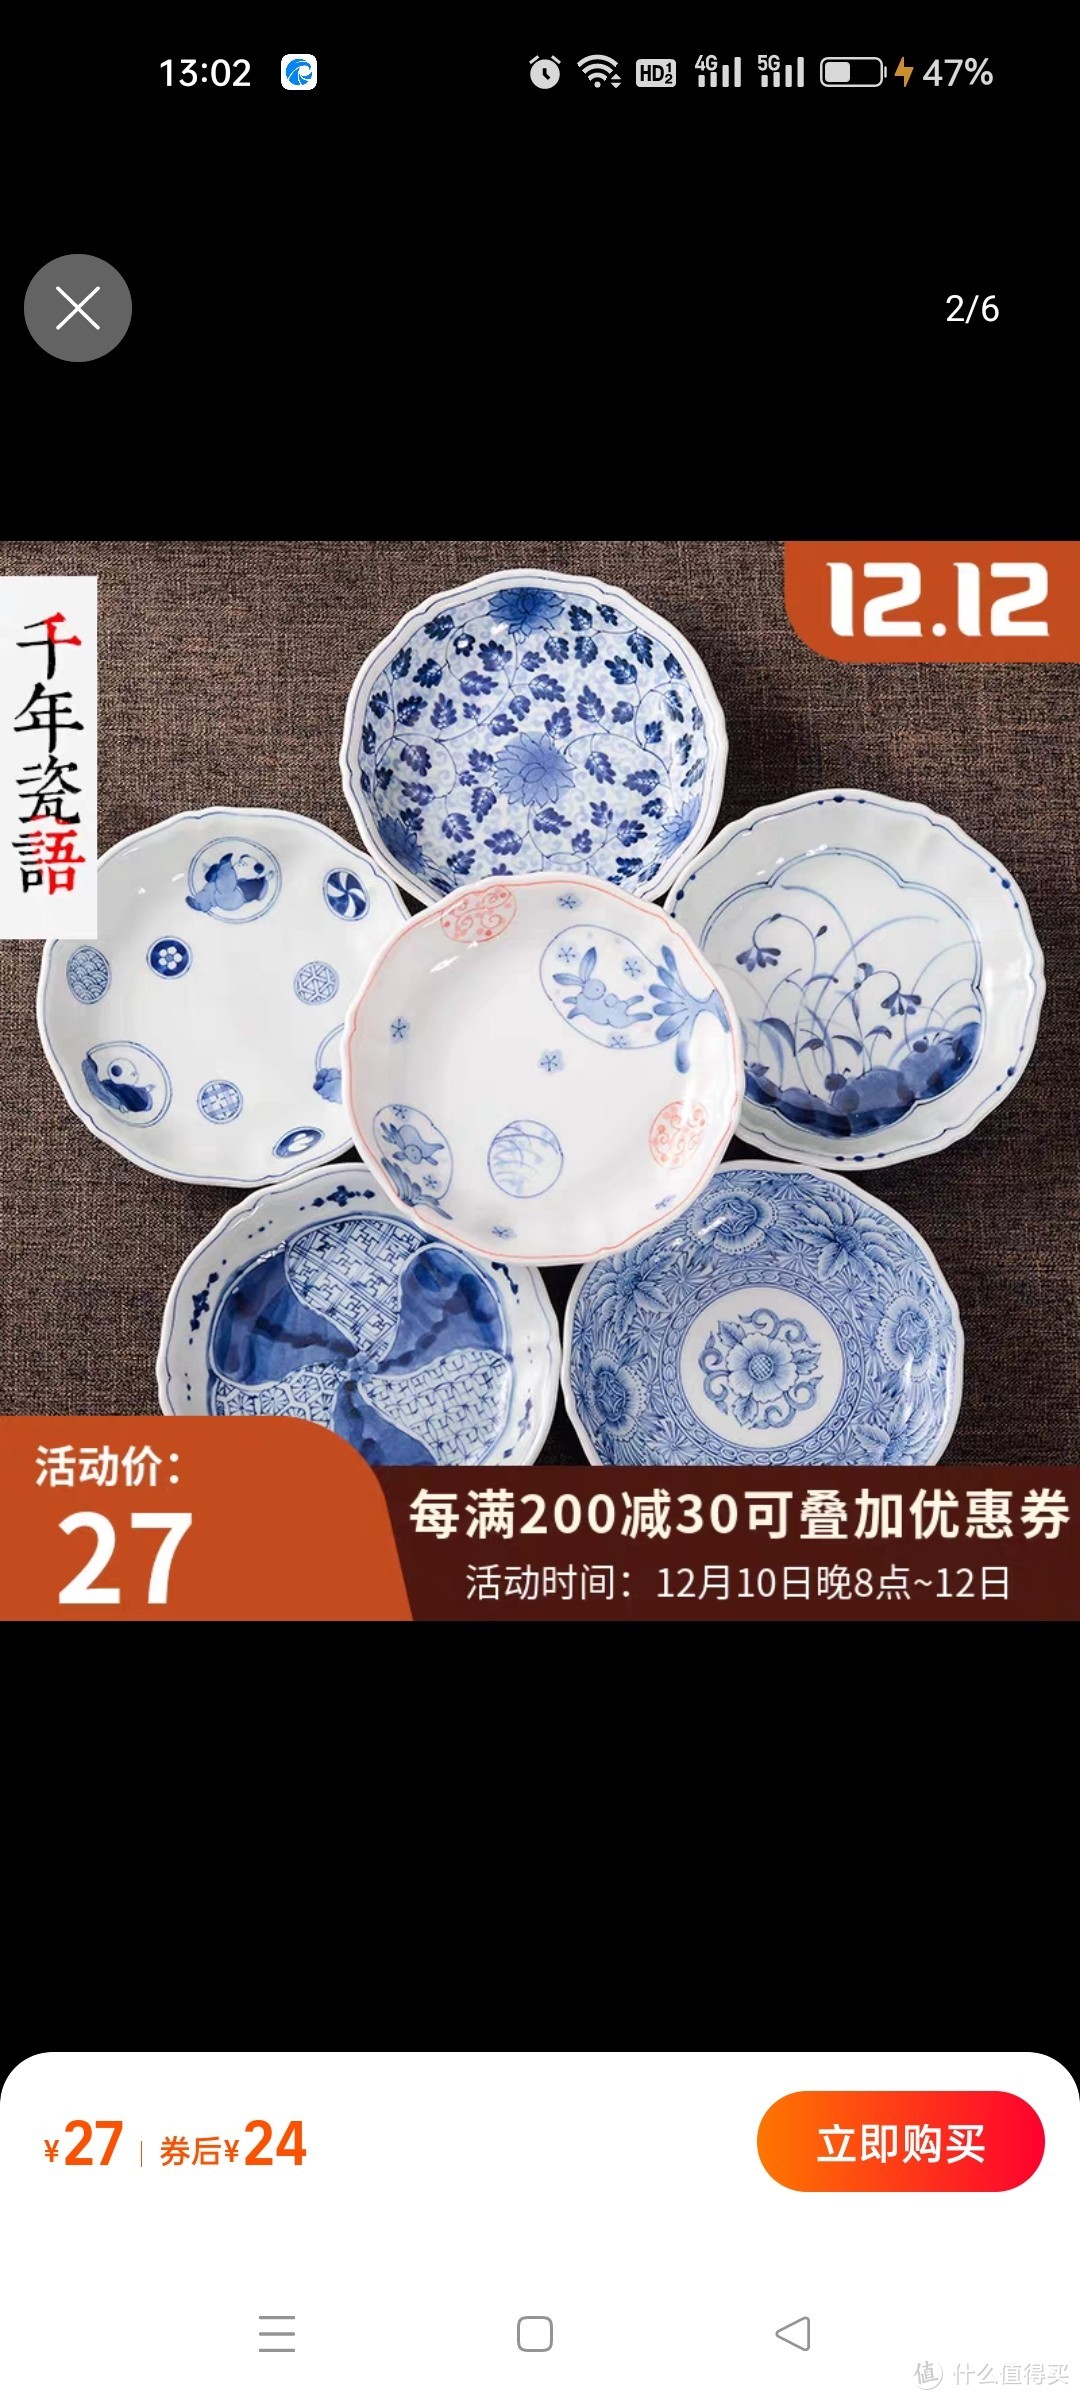 日本进口盘子家用陶瓷菜盘深盘日式盘子可爱小清新单个餐具精致